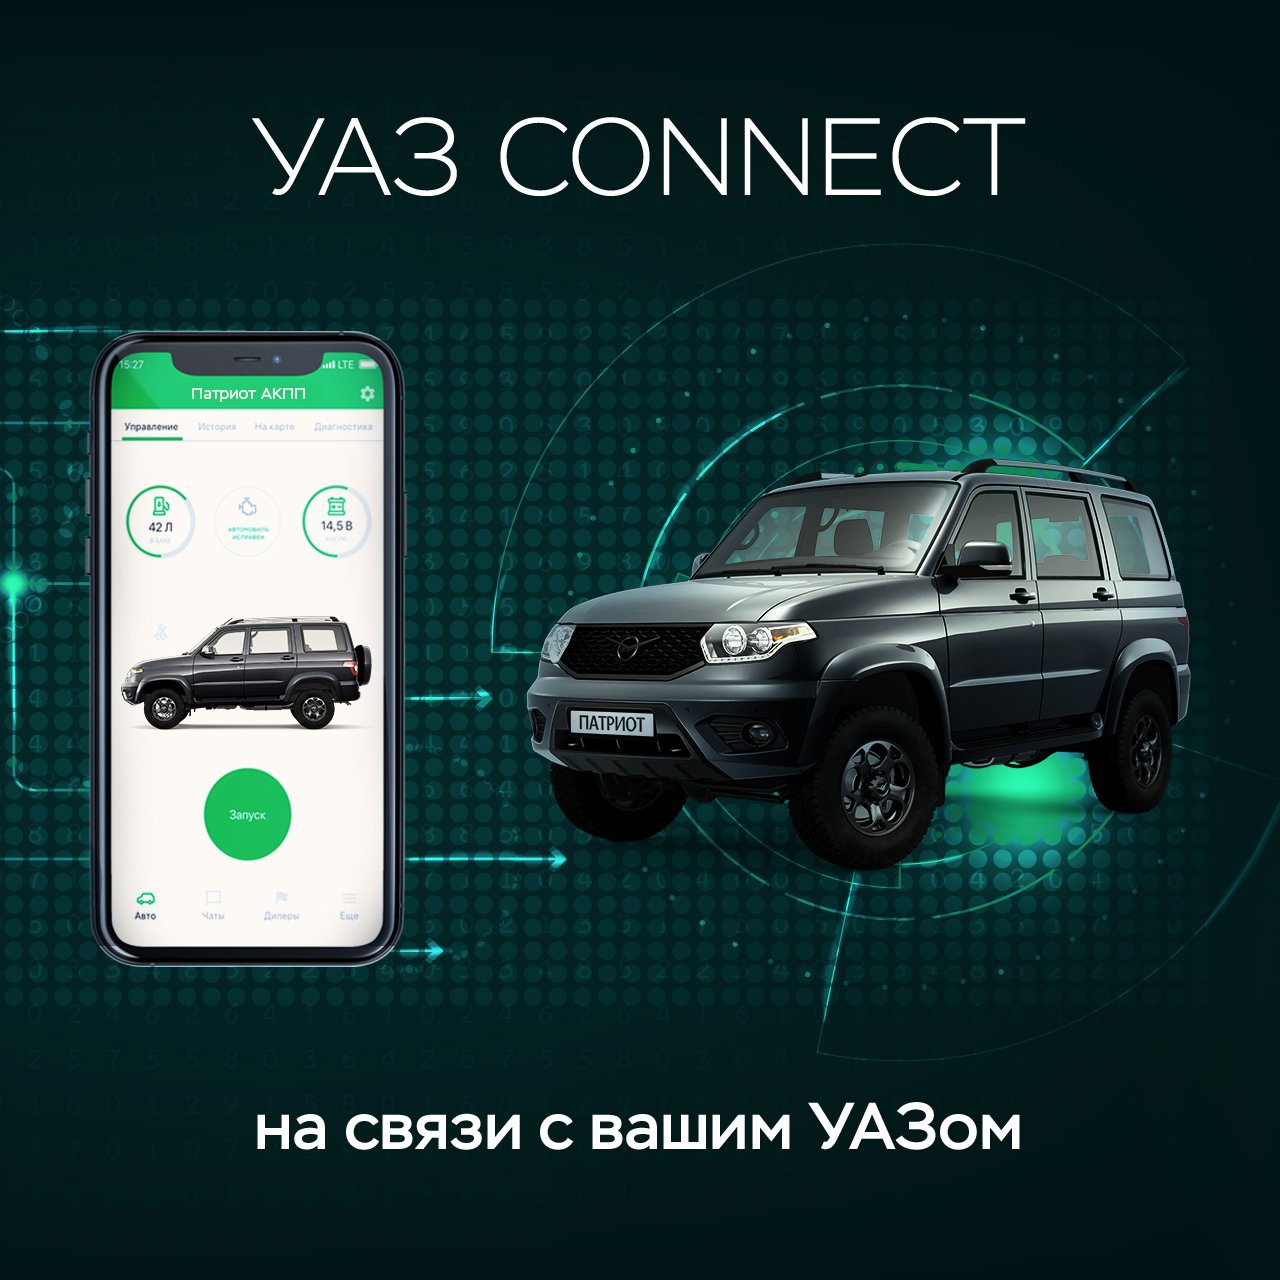 Сервис УАЗ Connect стал доступен для частных владельцев автомобилей УАЗ за 12,99 тысячи рублей